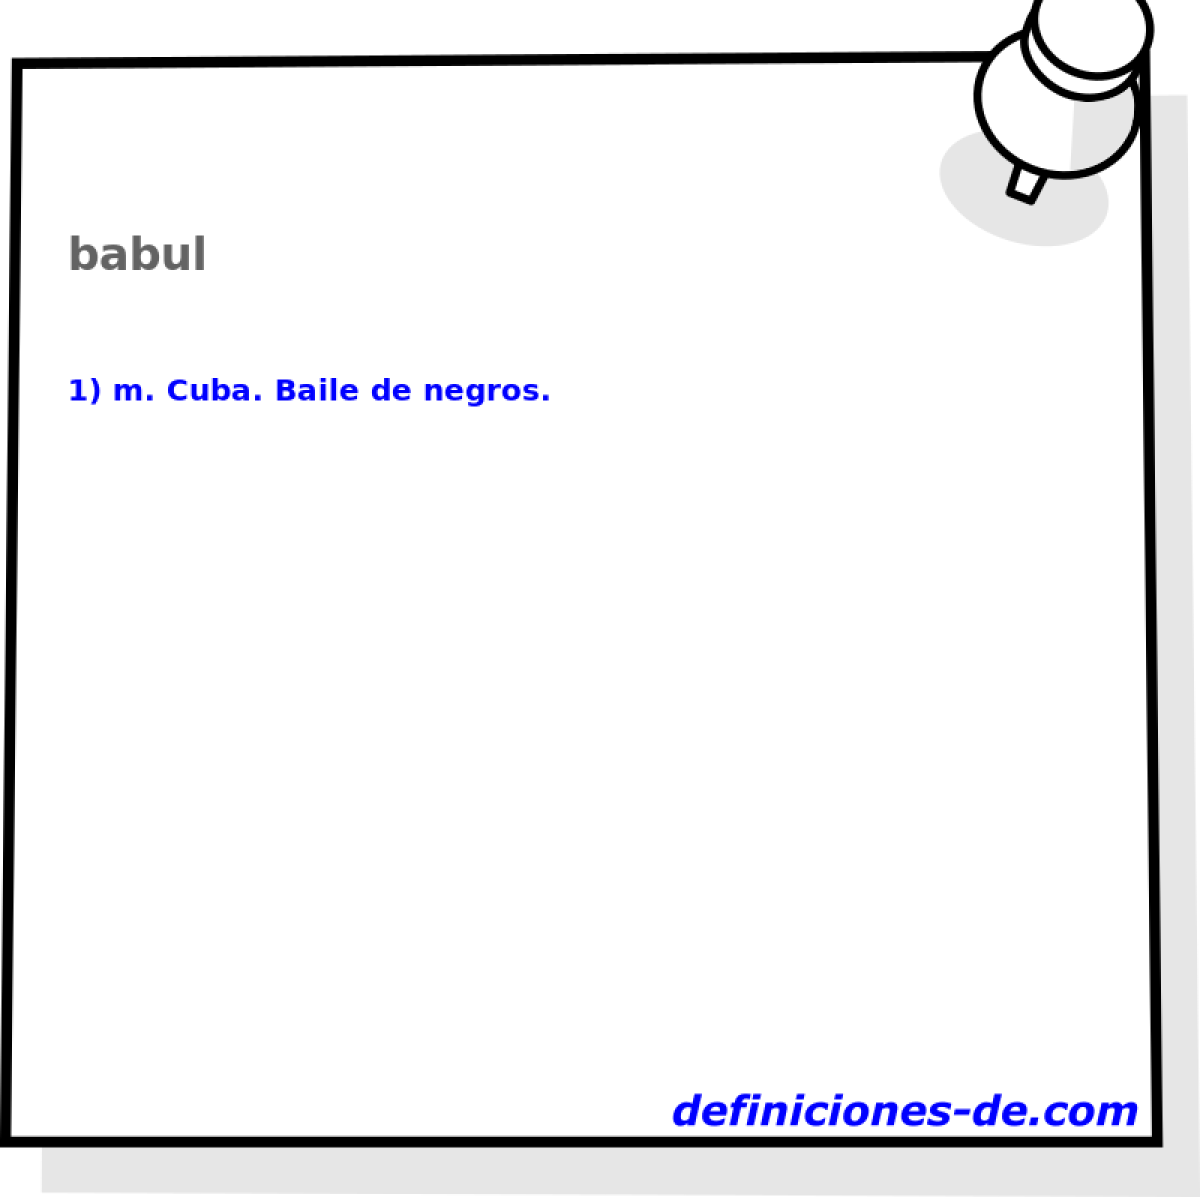 babul 